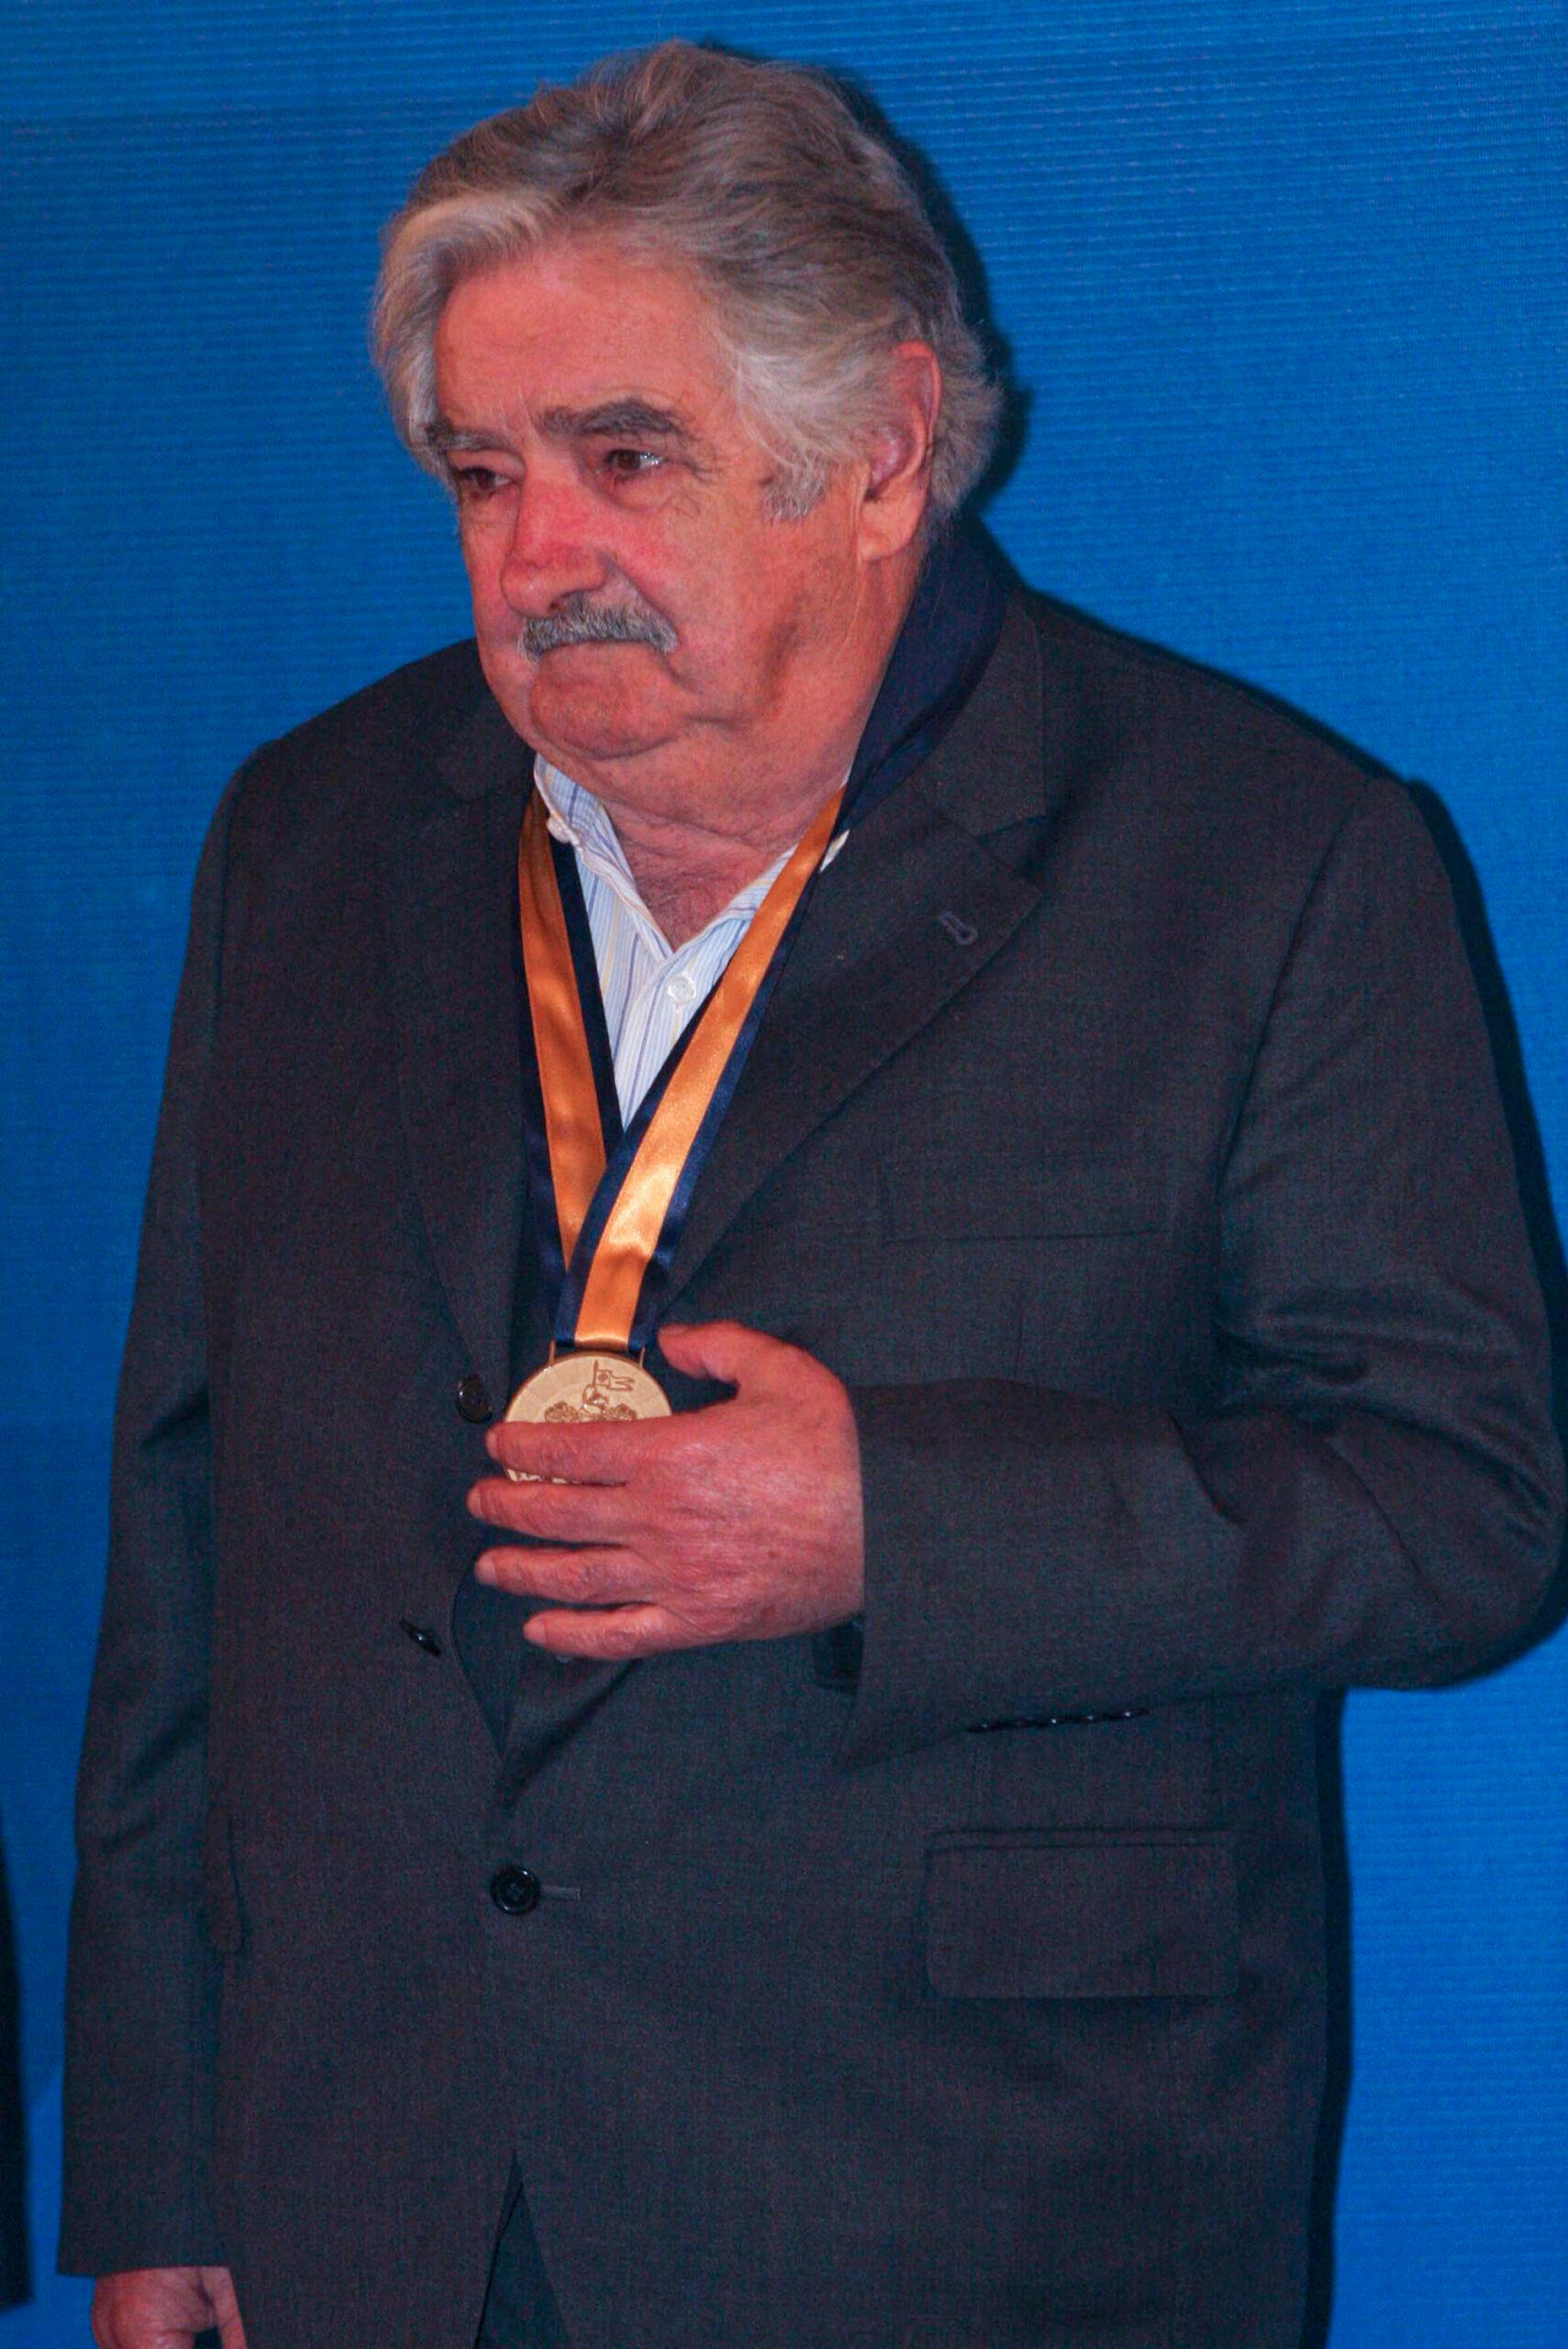 El discurso de Mujica en la ONU (Video)